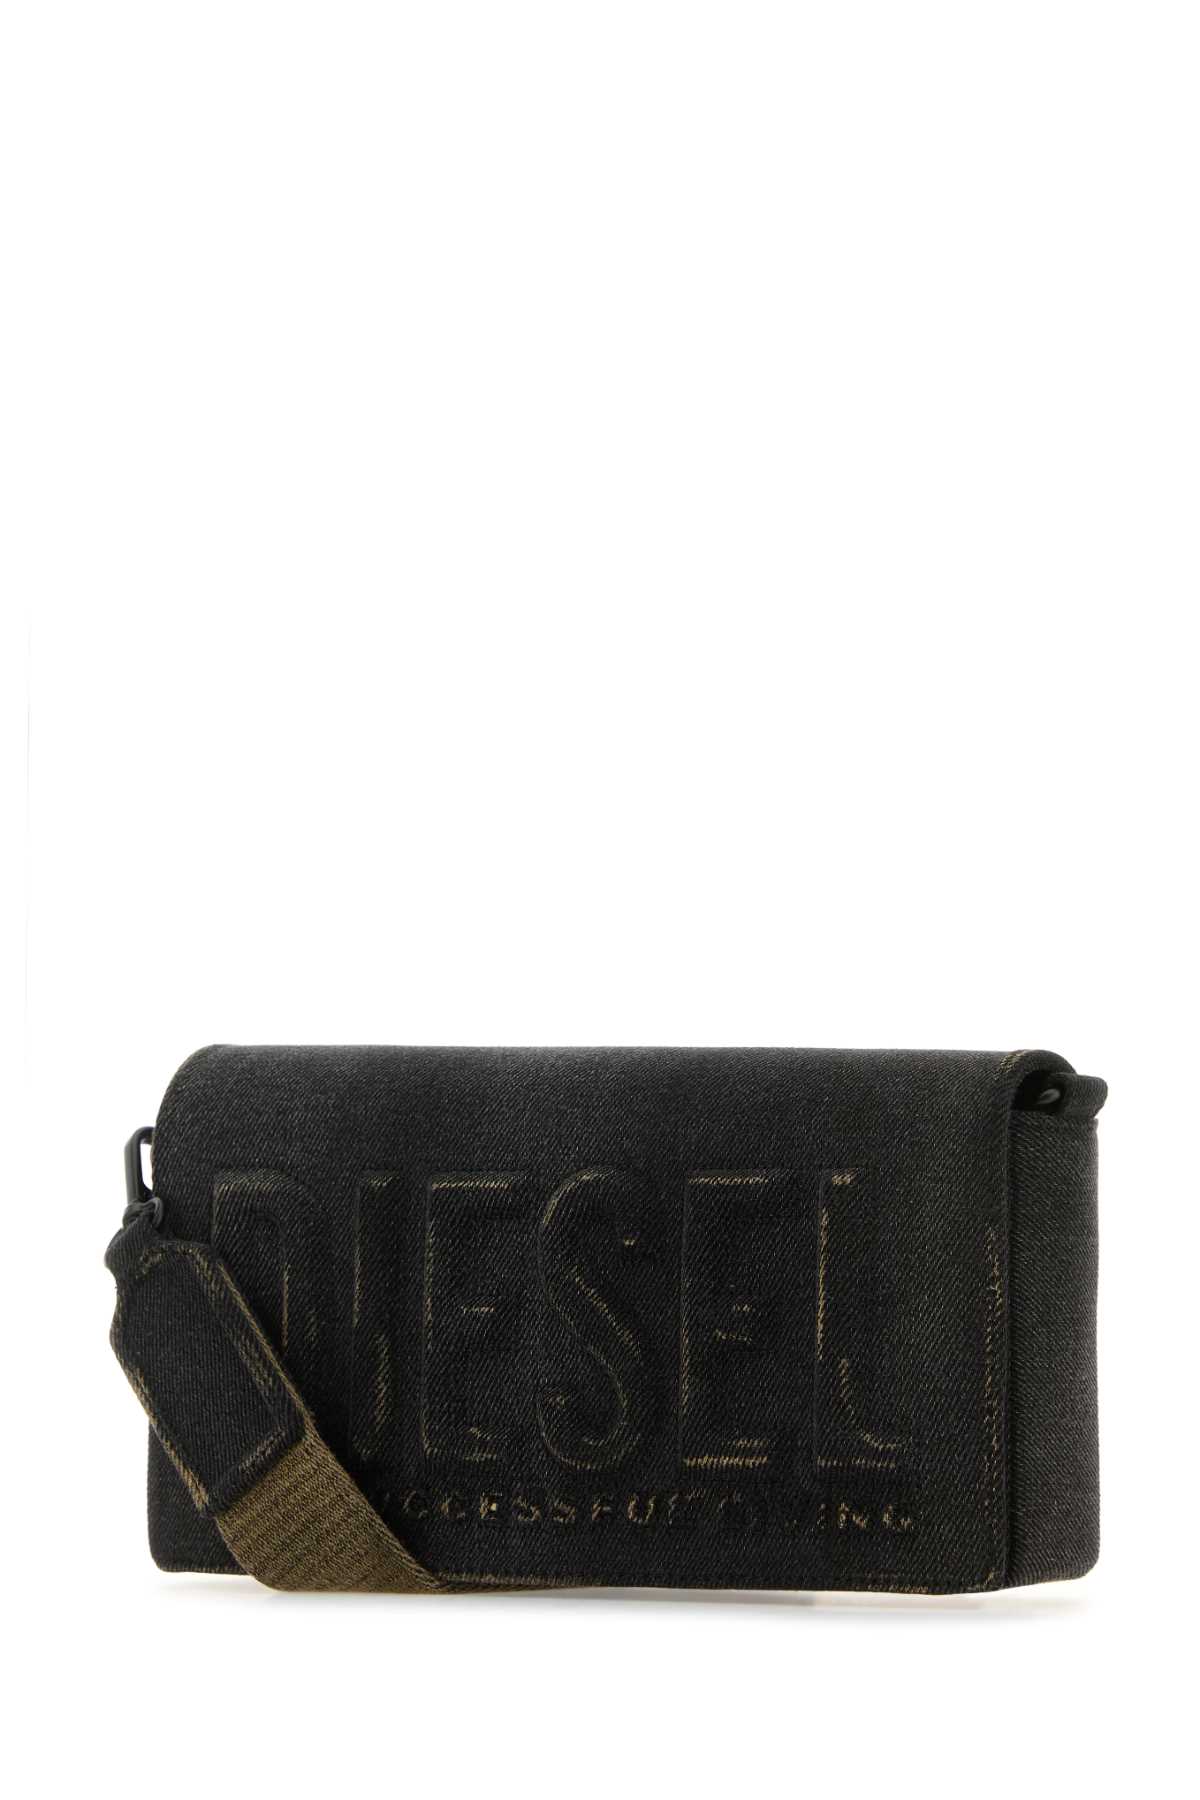 Shop Diesel Black Denim M Biscotto Crossbody Bag In T8013